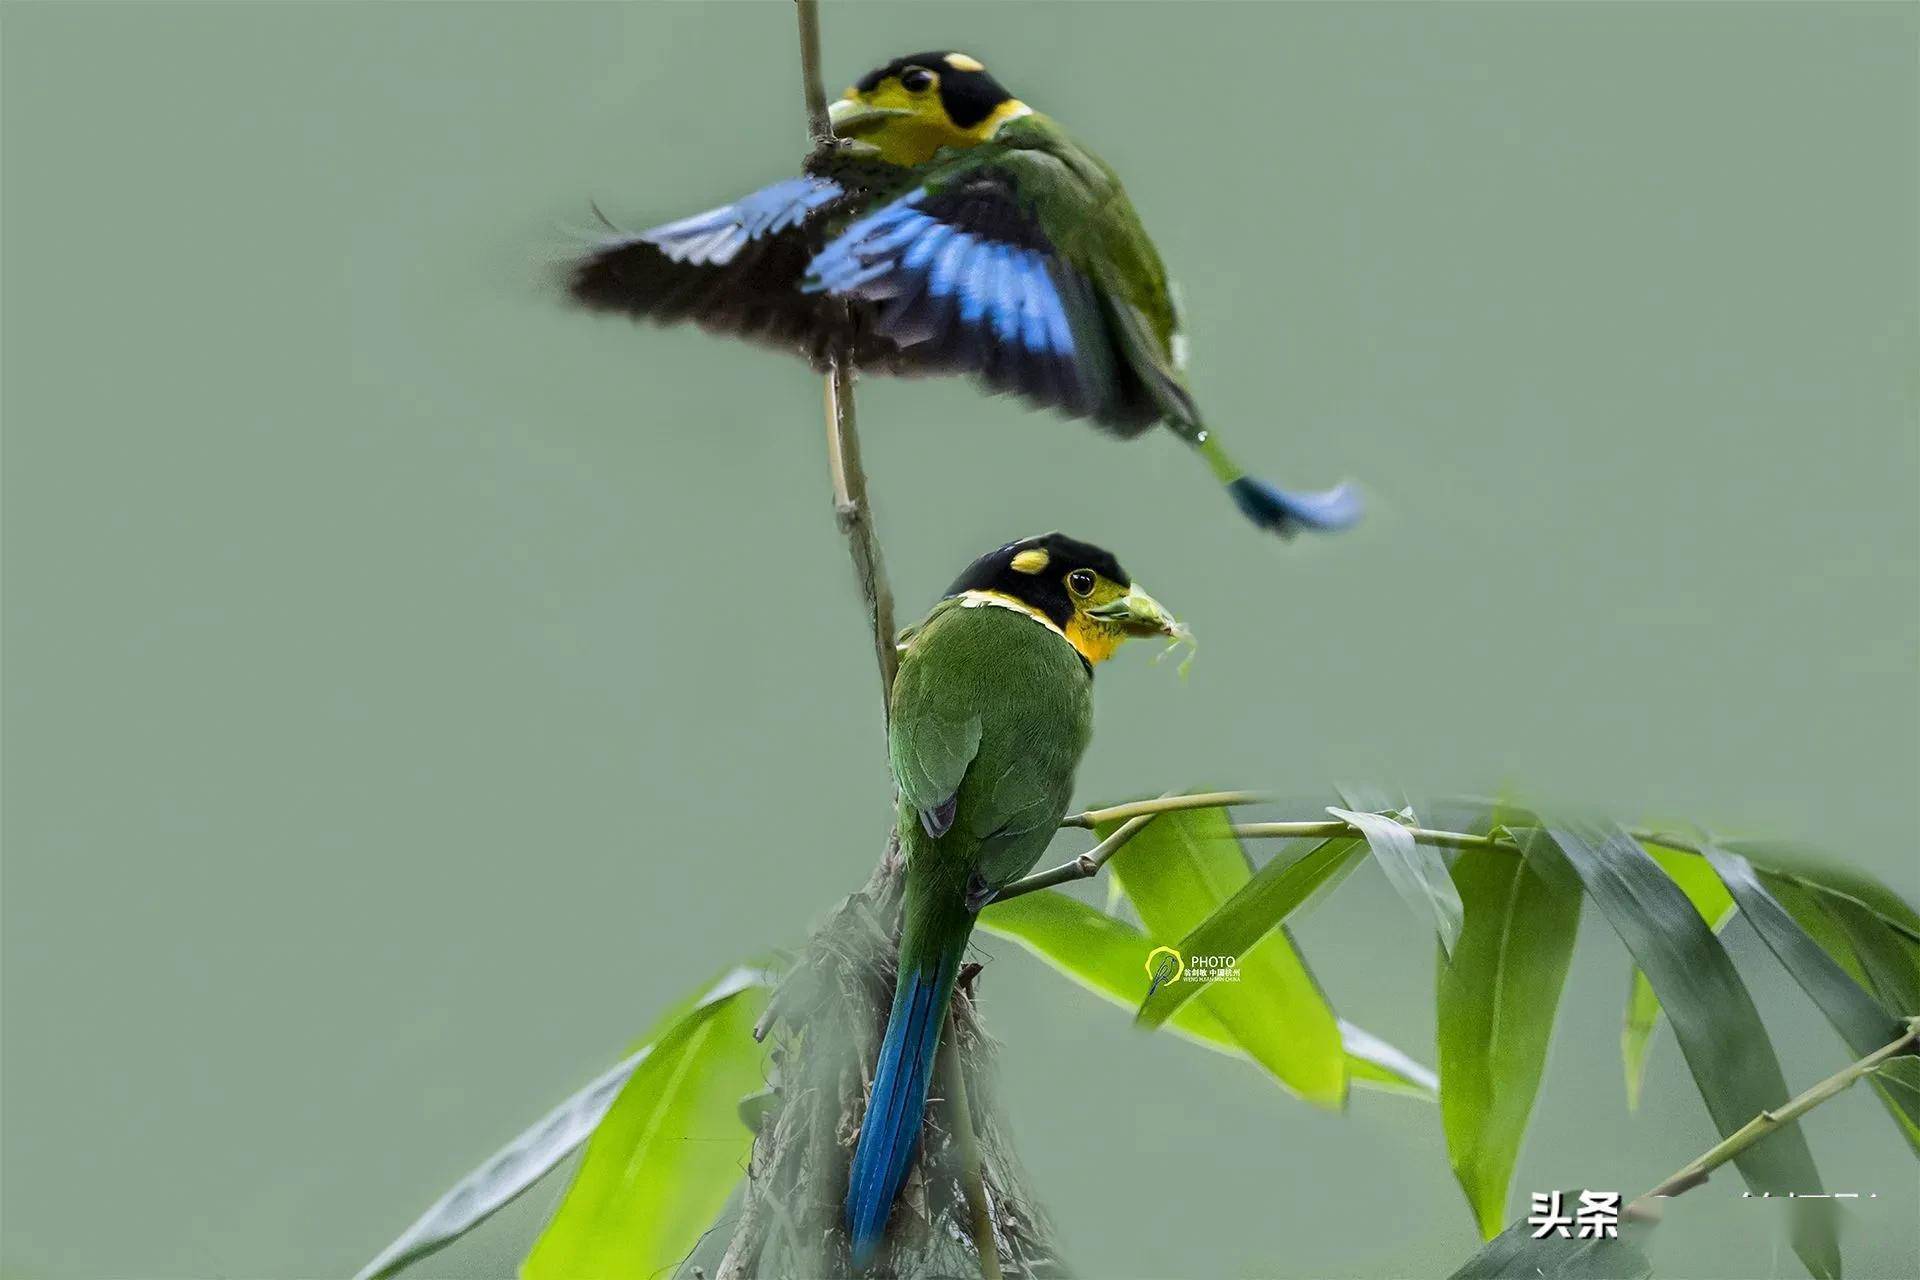 广西弄岗特有的鸟种:长尾阔嘴鸟.杭州翁剑敏/摄影